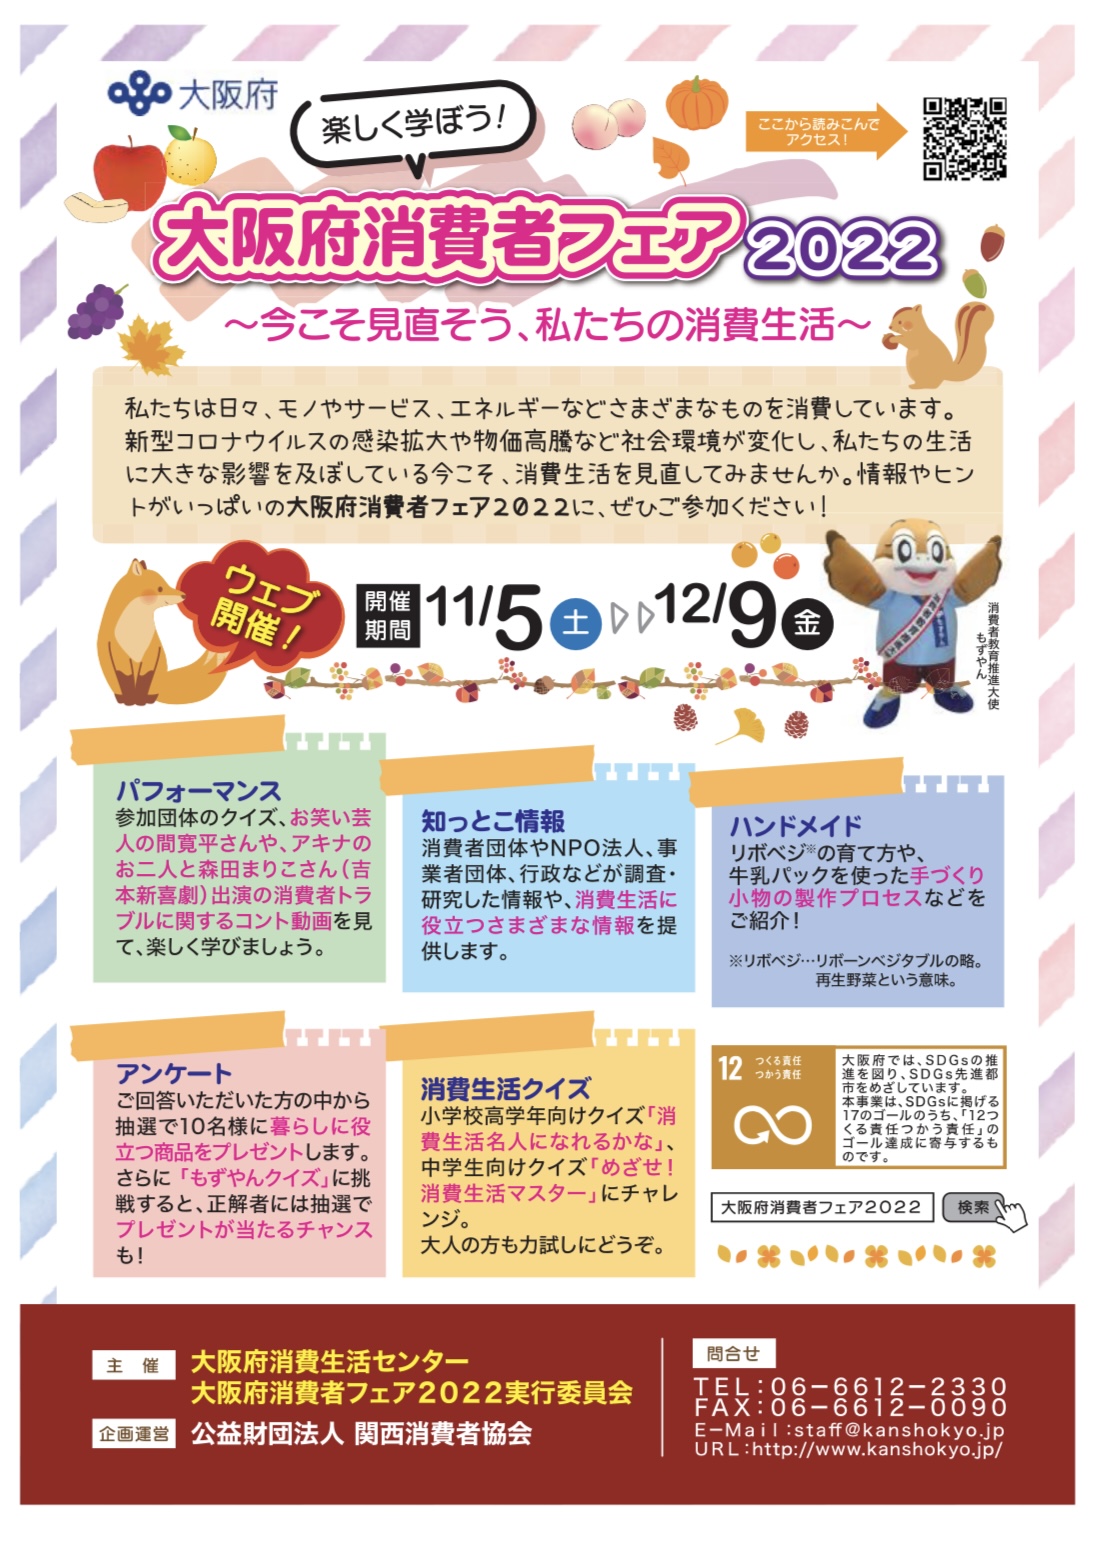 大阪府消費者フェア2022(ウェブ開催)に出展します。